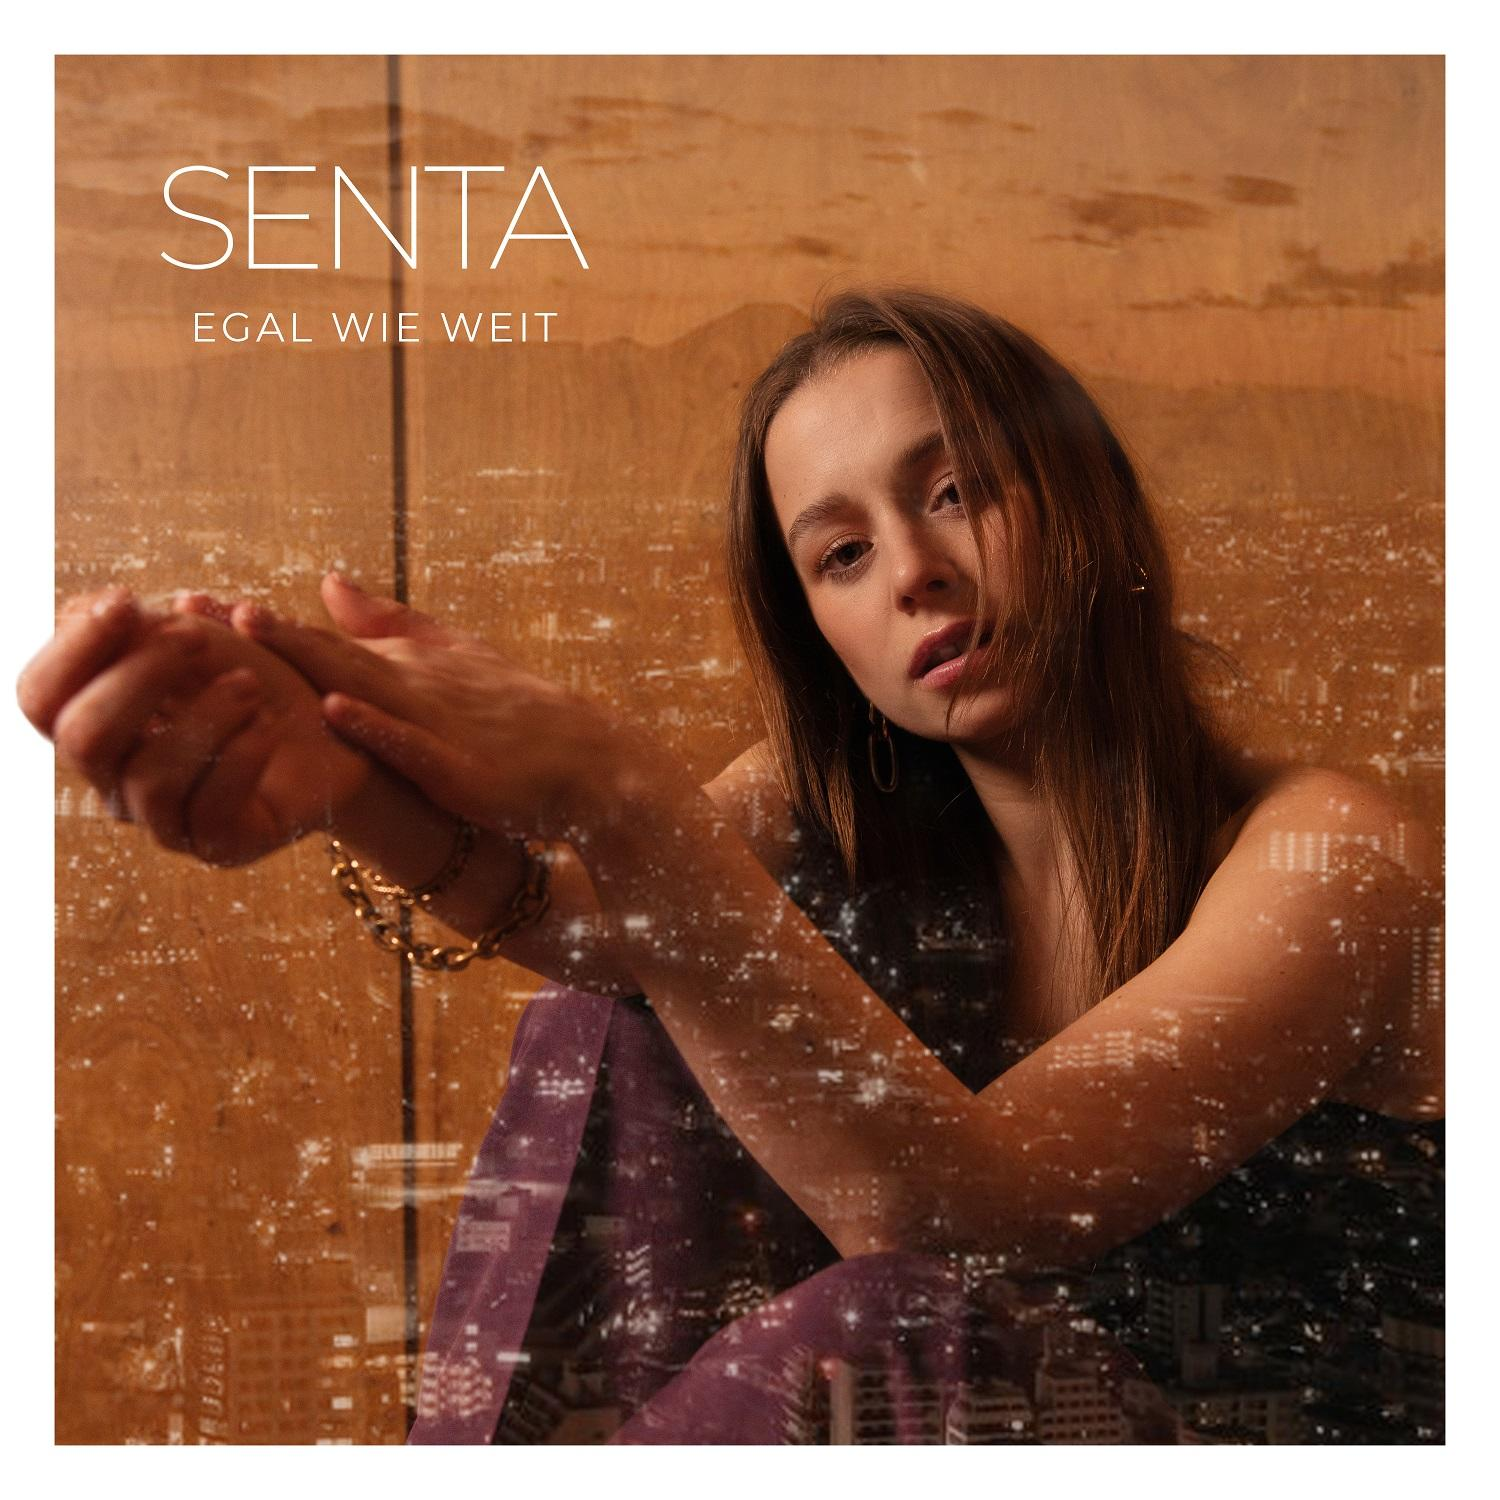 + - Senta (CD WEIT Merchandising) - Edition EGAL WIE Limitierte Fanbox